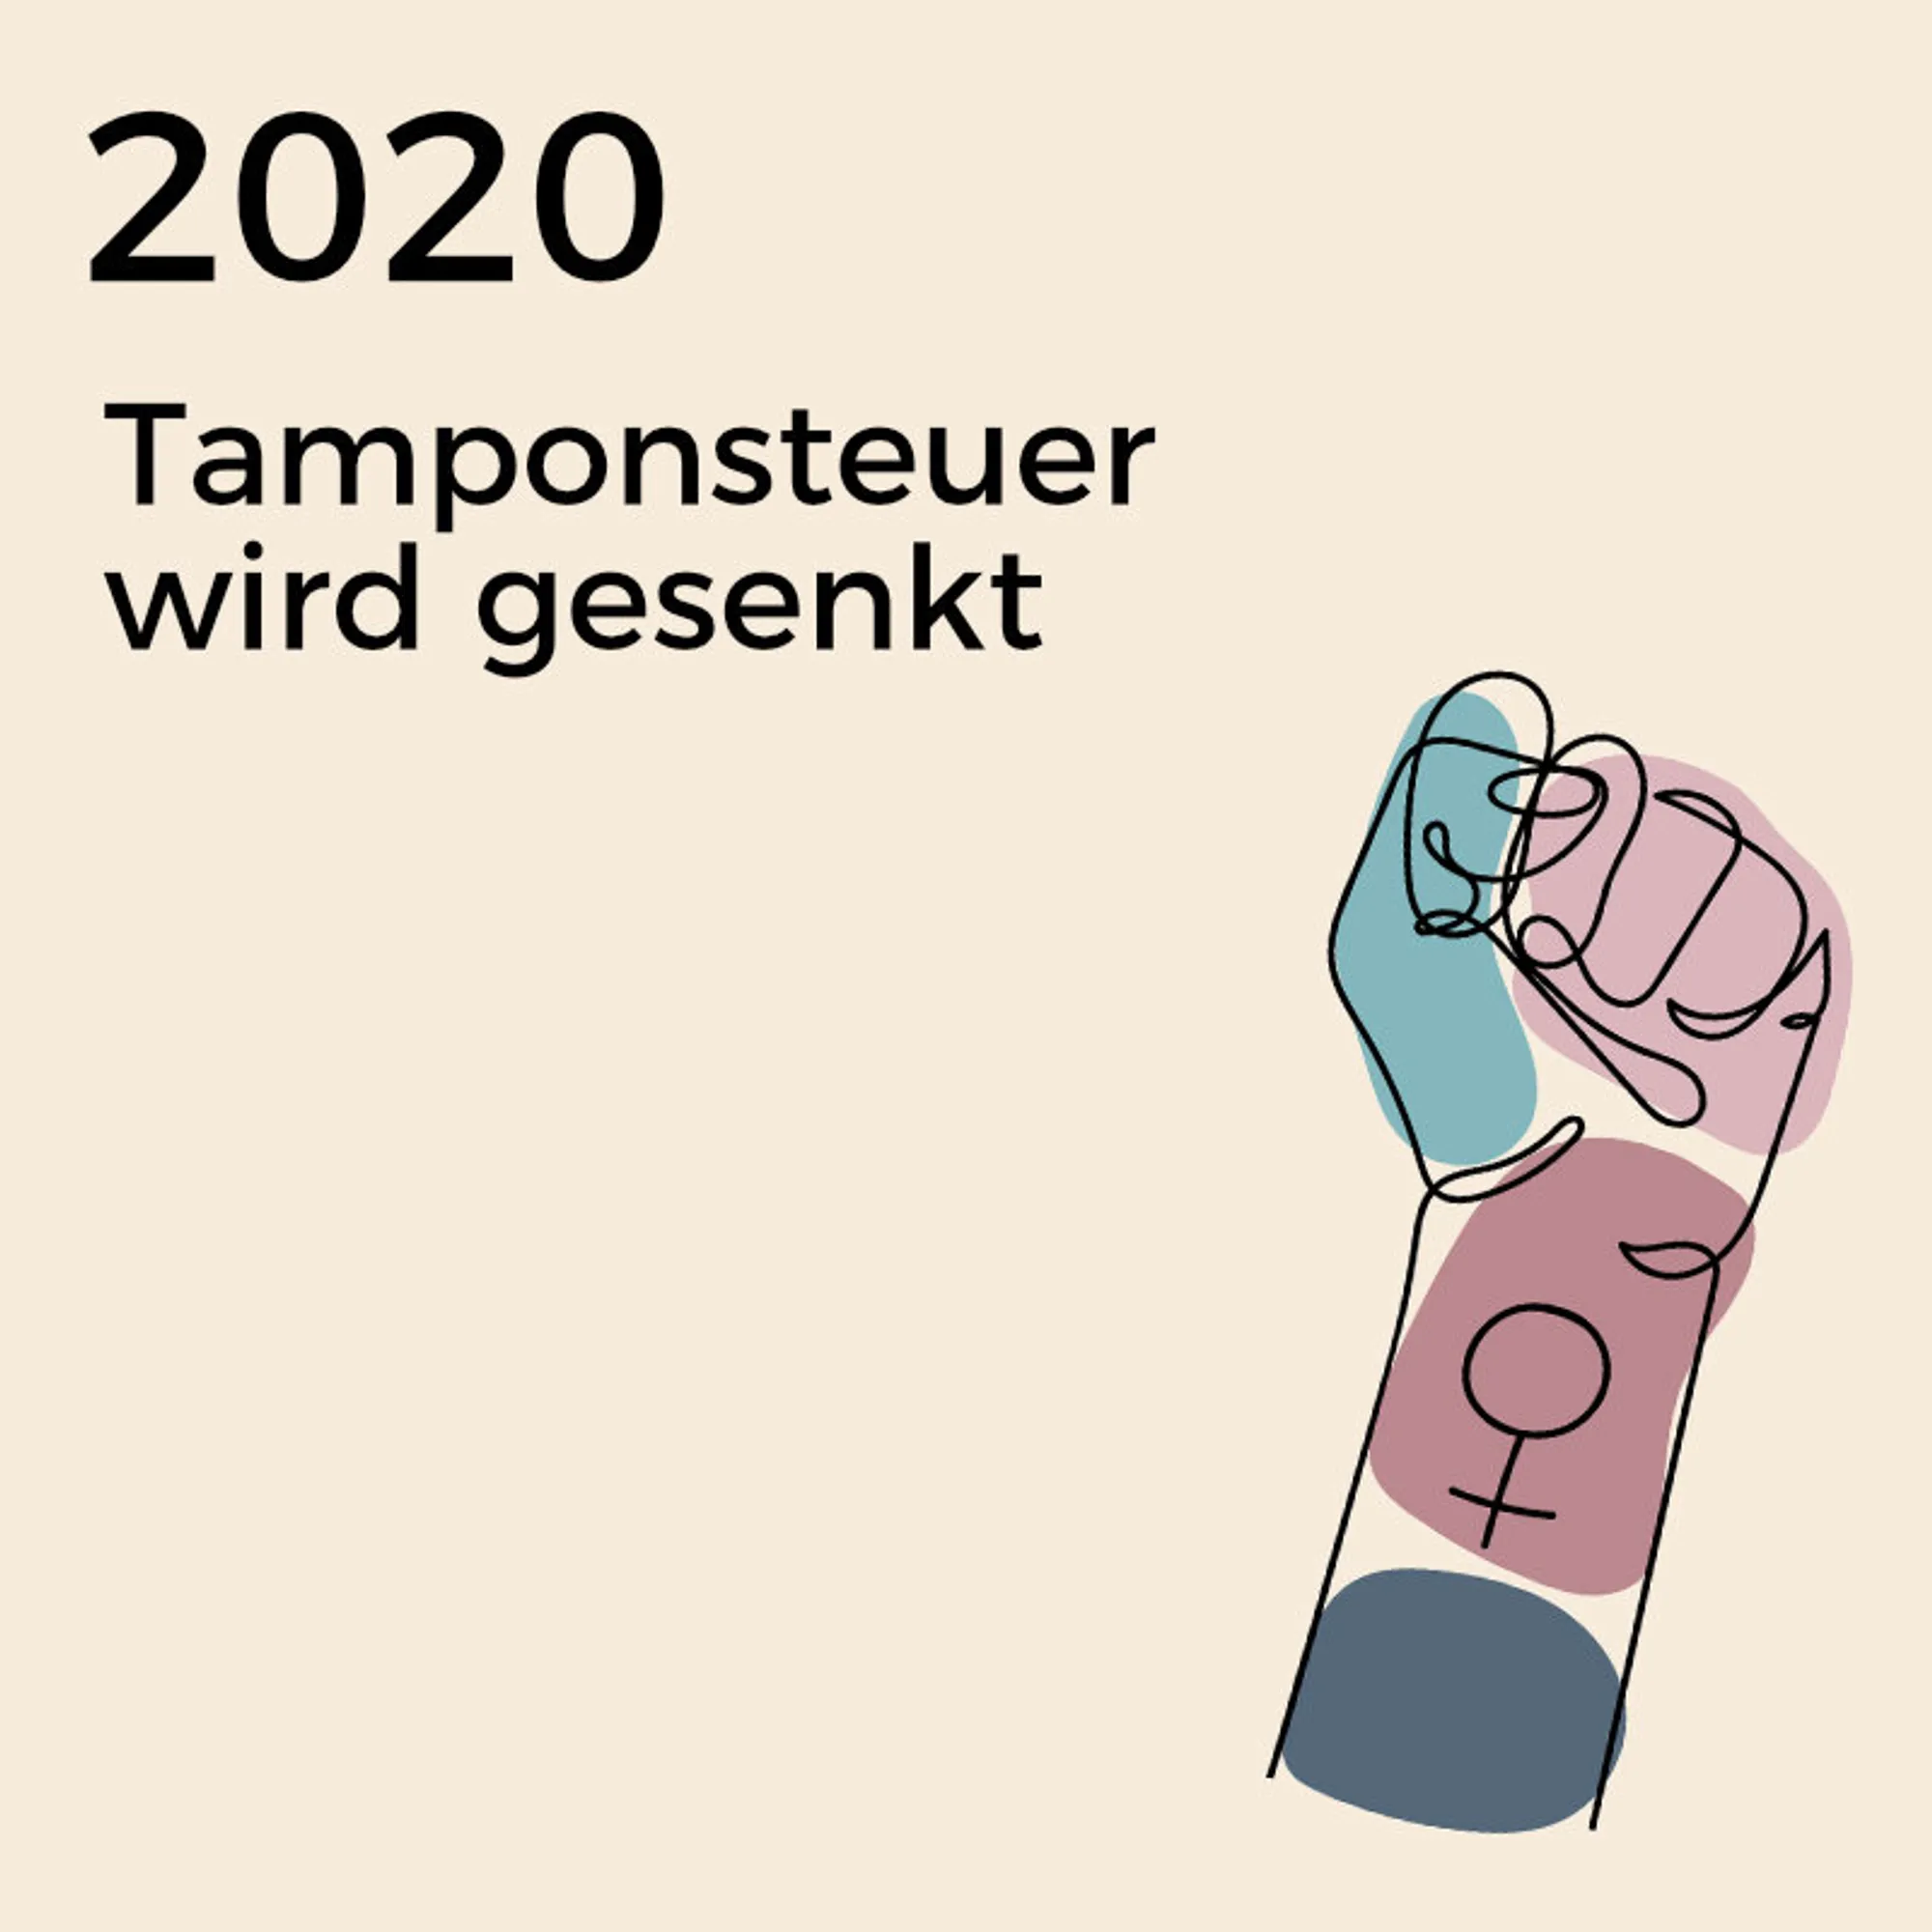 2020 – Tamponsteuer wird gesenktSeit 2020 gelten Menstruationsartikel nicht mehr als Luxusprodukt. Nach eine 2019 gestarteten Petition wurde die Mehrwertsteuer von 19 auf sieben Prozent gesenkt.
